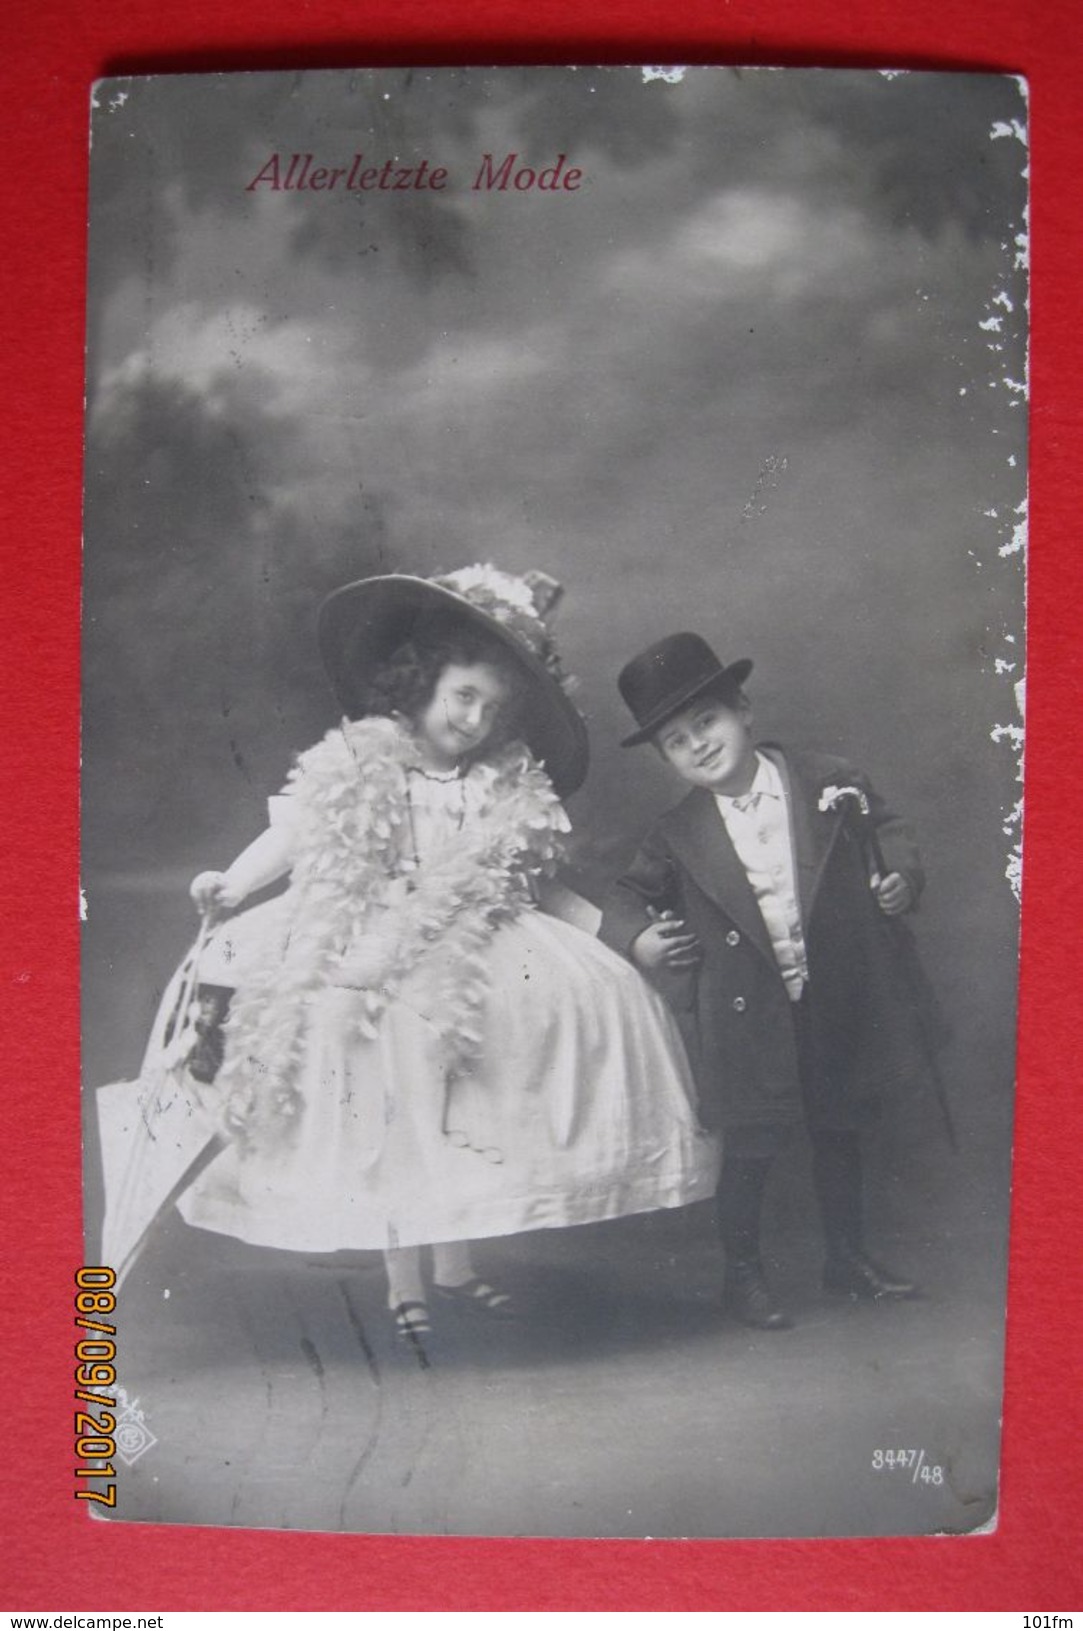 Kinder Allerletzte Mode - Kids Very Last Fashion 1912 - Fotografie